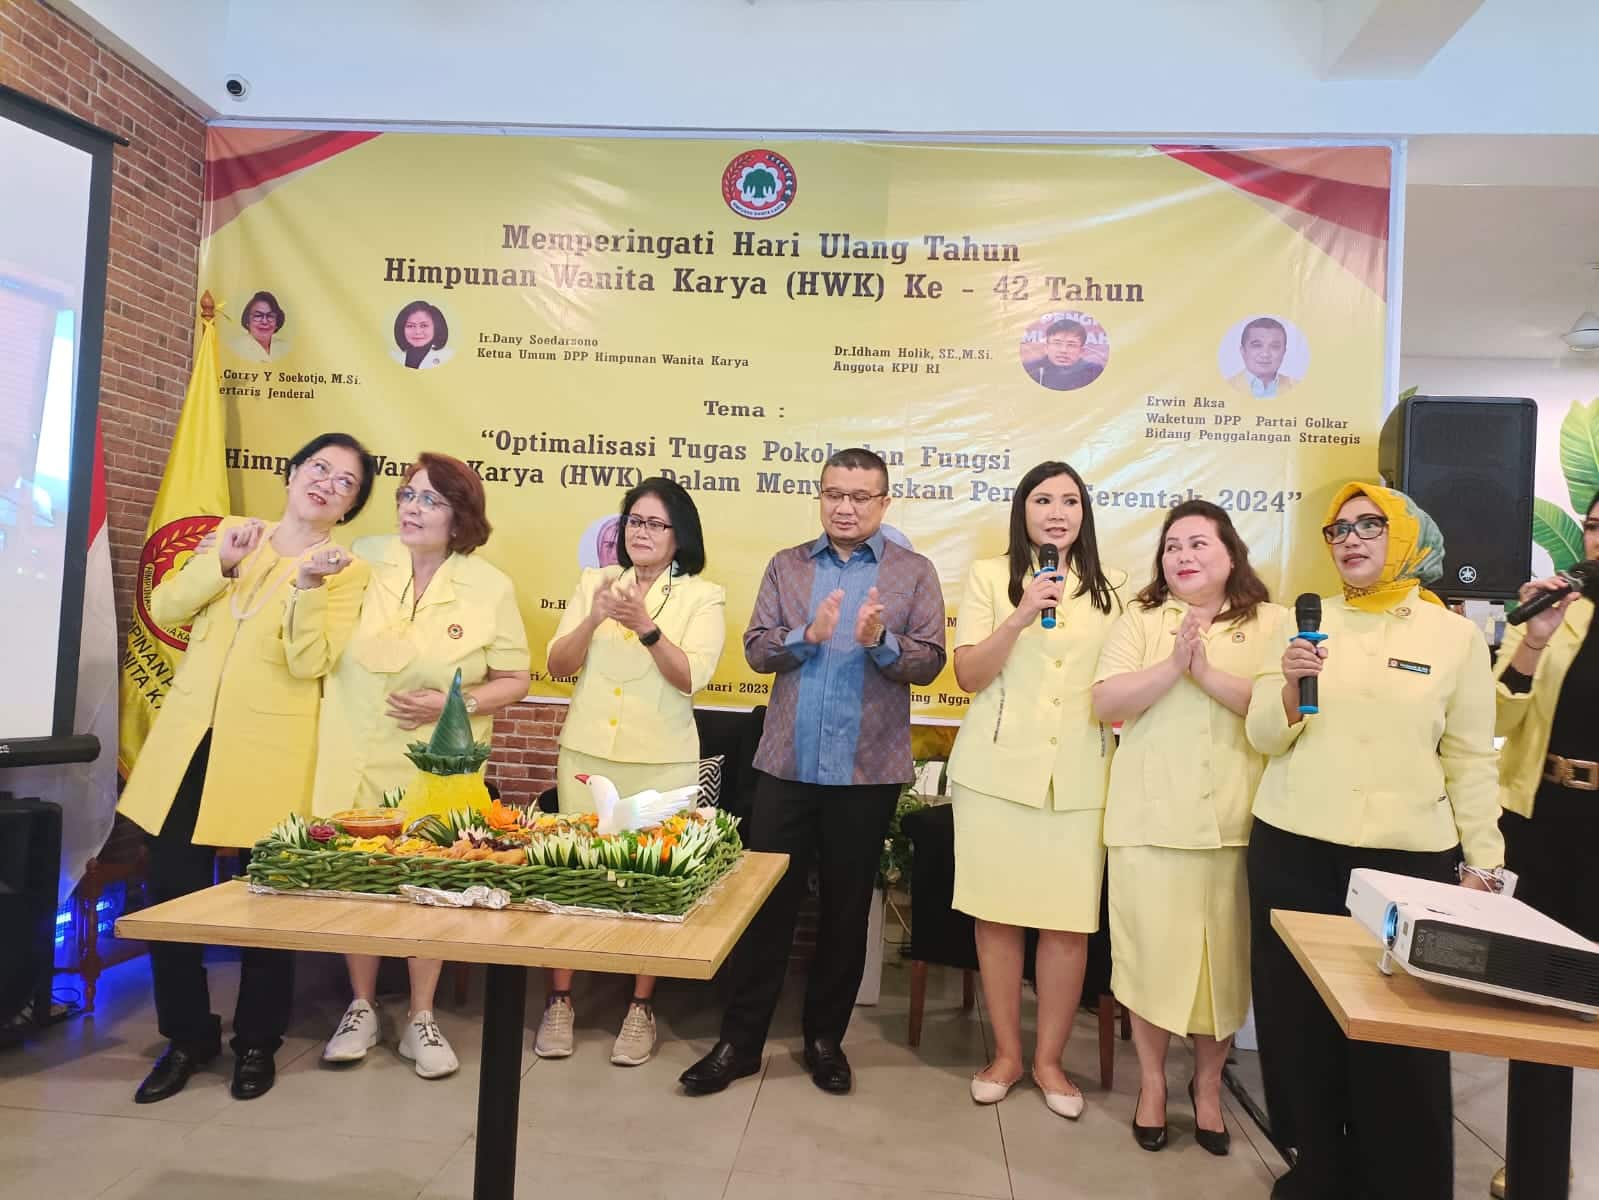 Wakil Ketua Umum DPP Partai Golkar Bidang Penggalangan Strategis Erwin Aksa menghadiri perayaan ulang tahun Himpunan Wanita Karya ke-42.